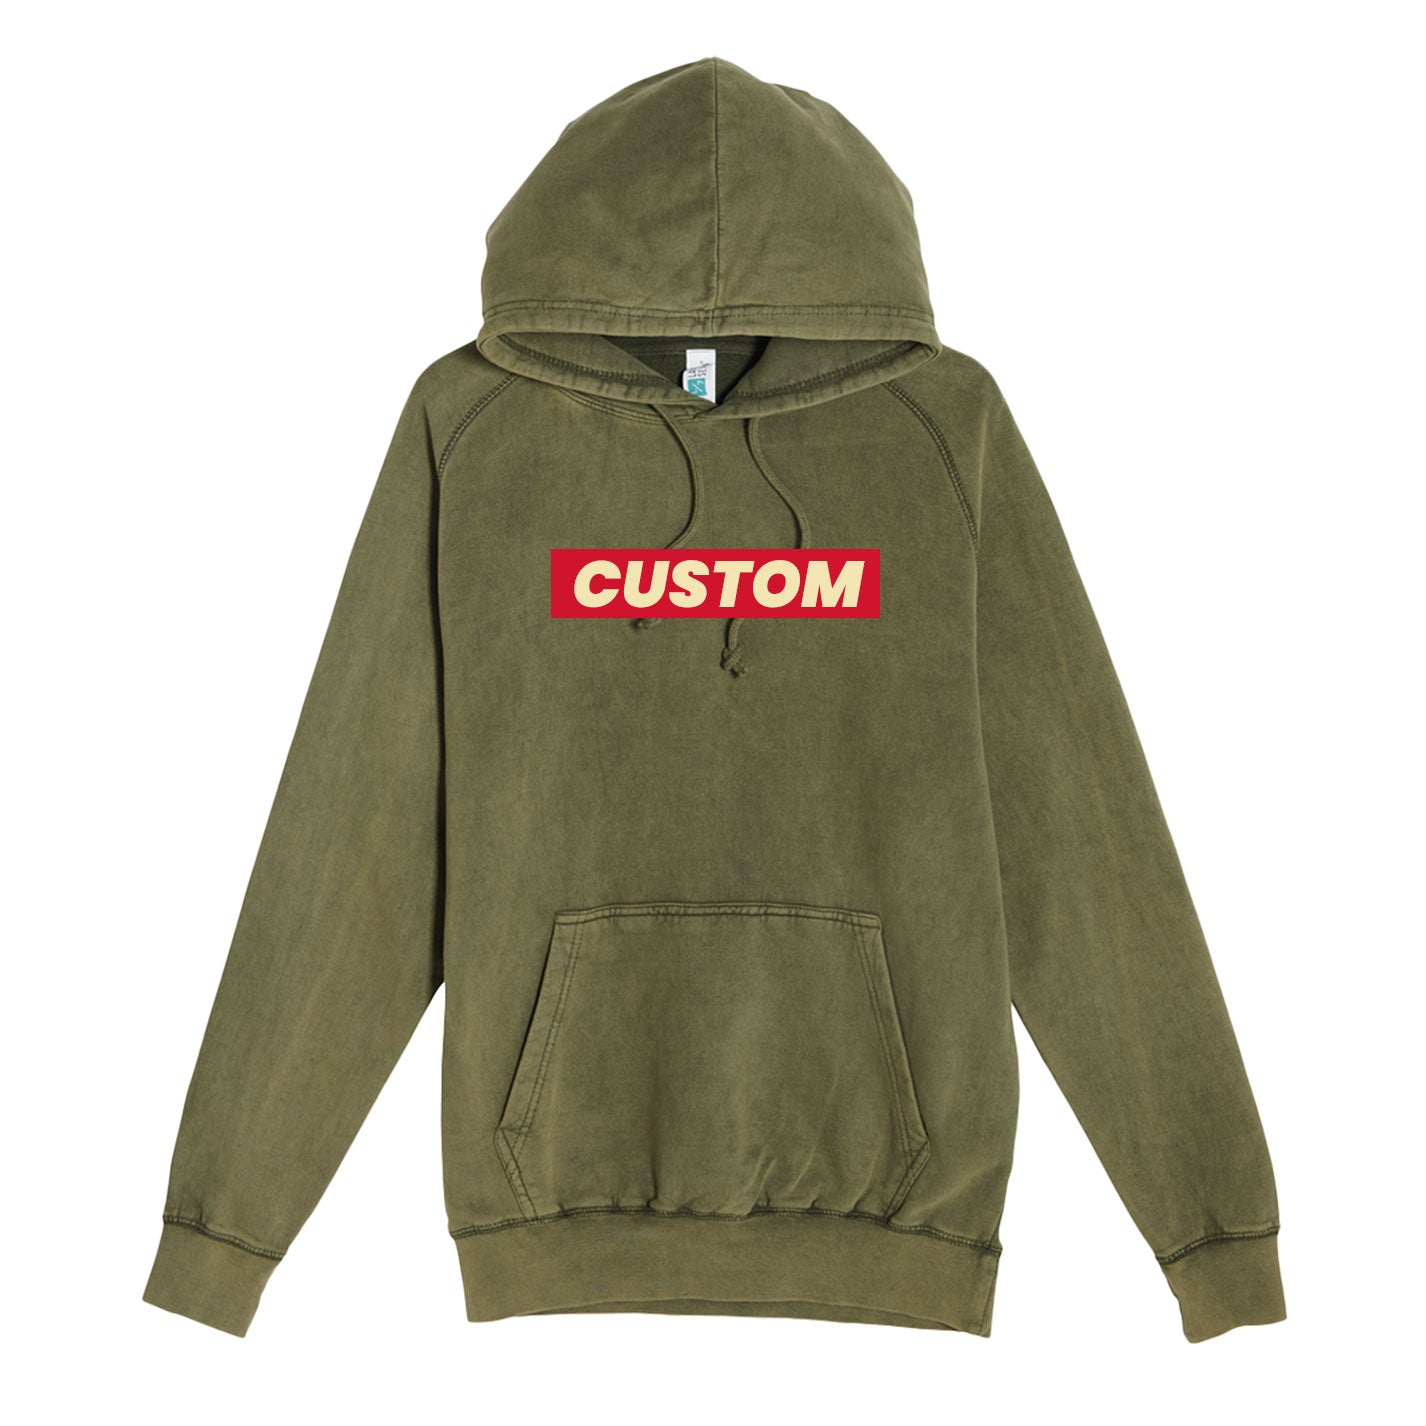 custom vintage hoodies in olive